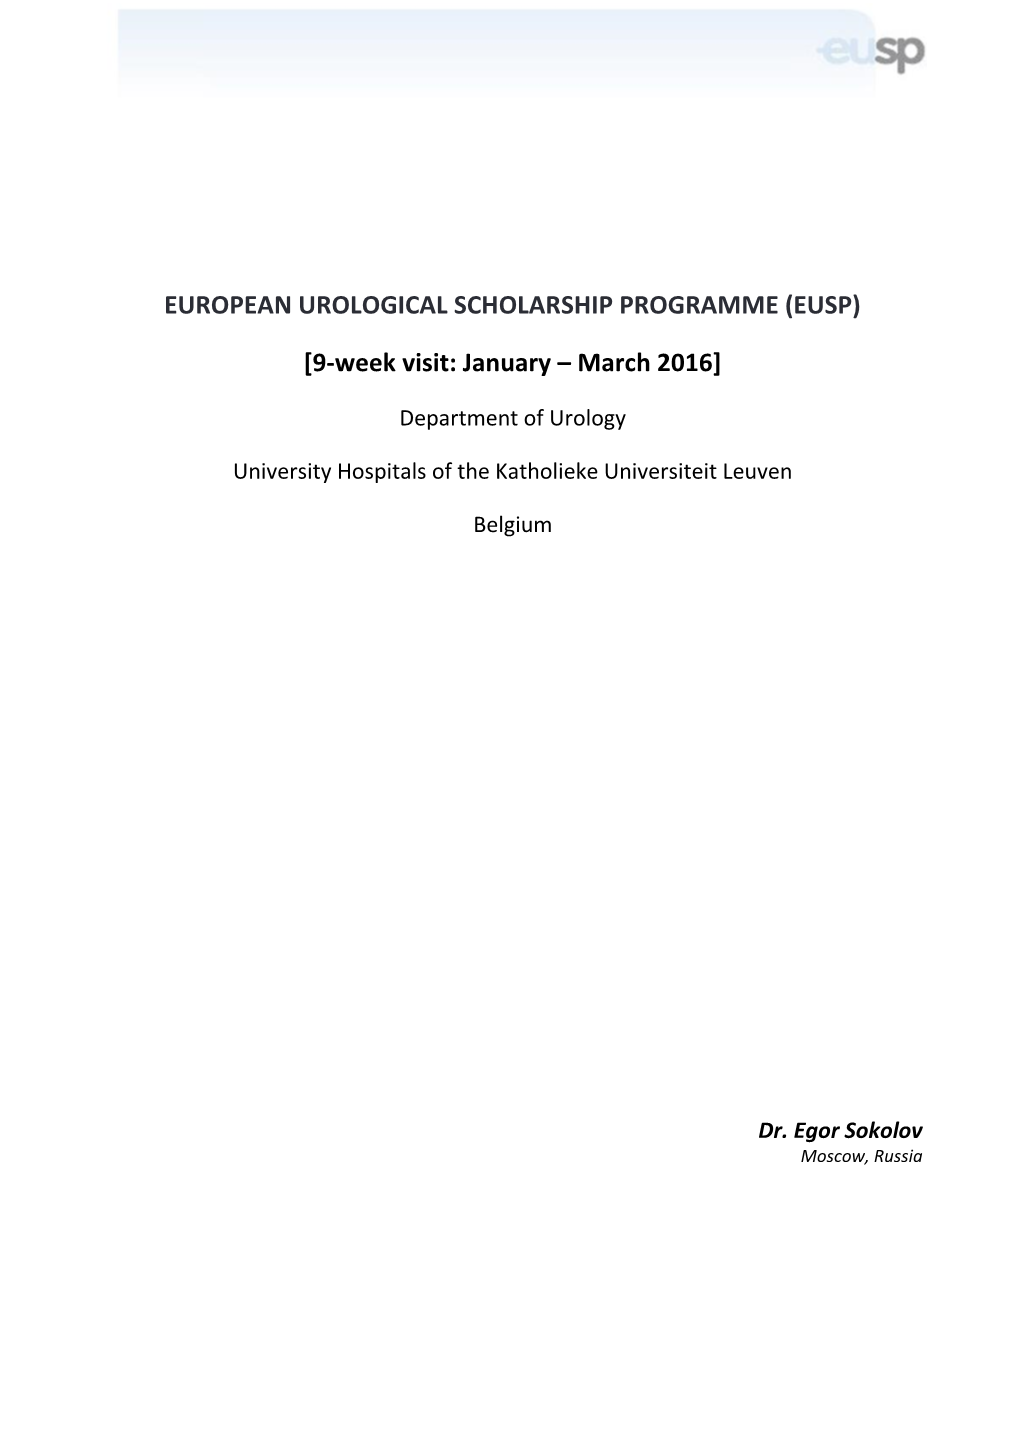 EUSP Report Sokolov